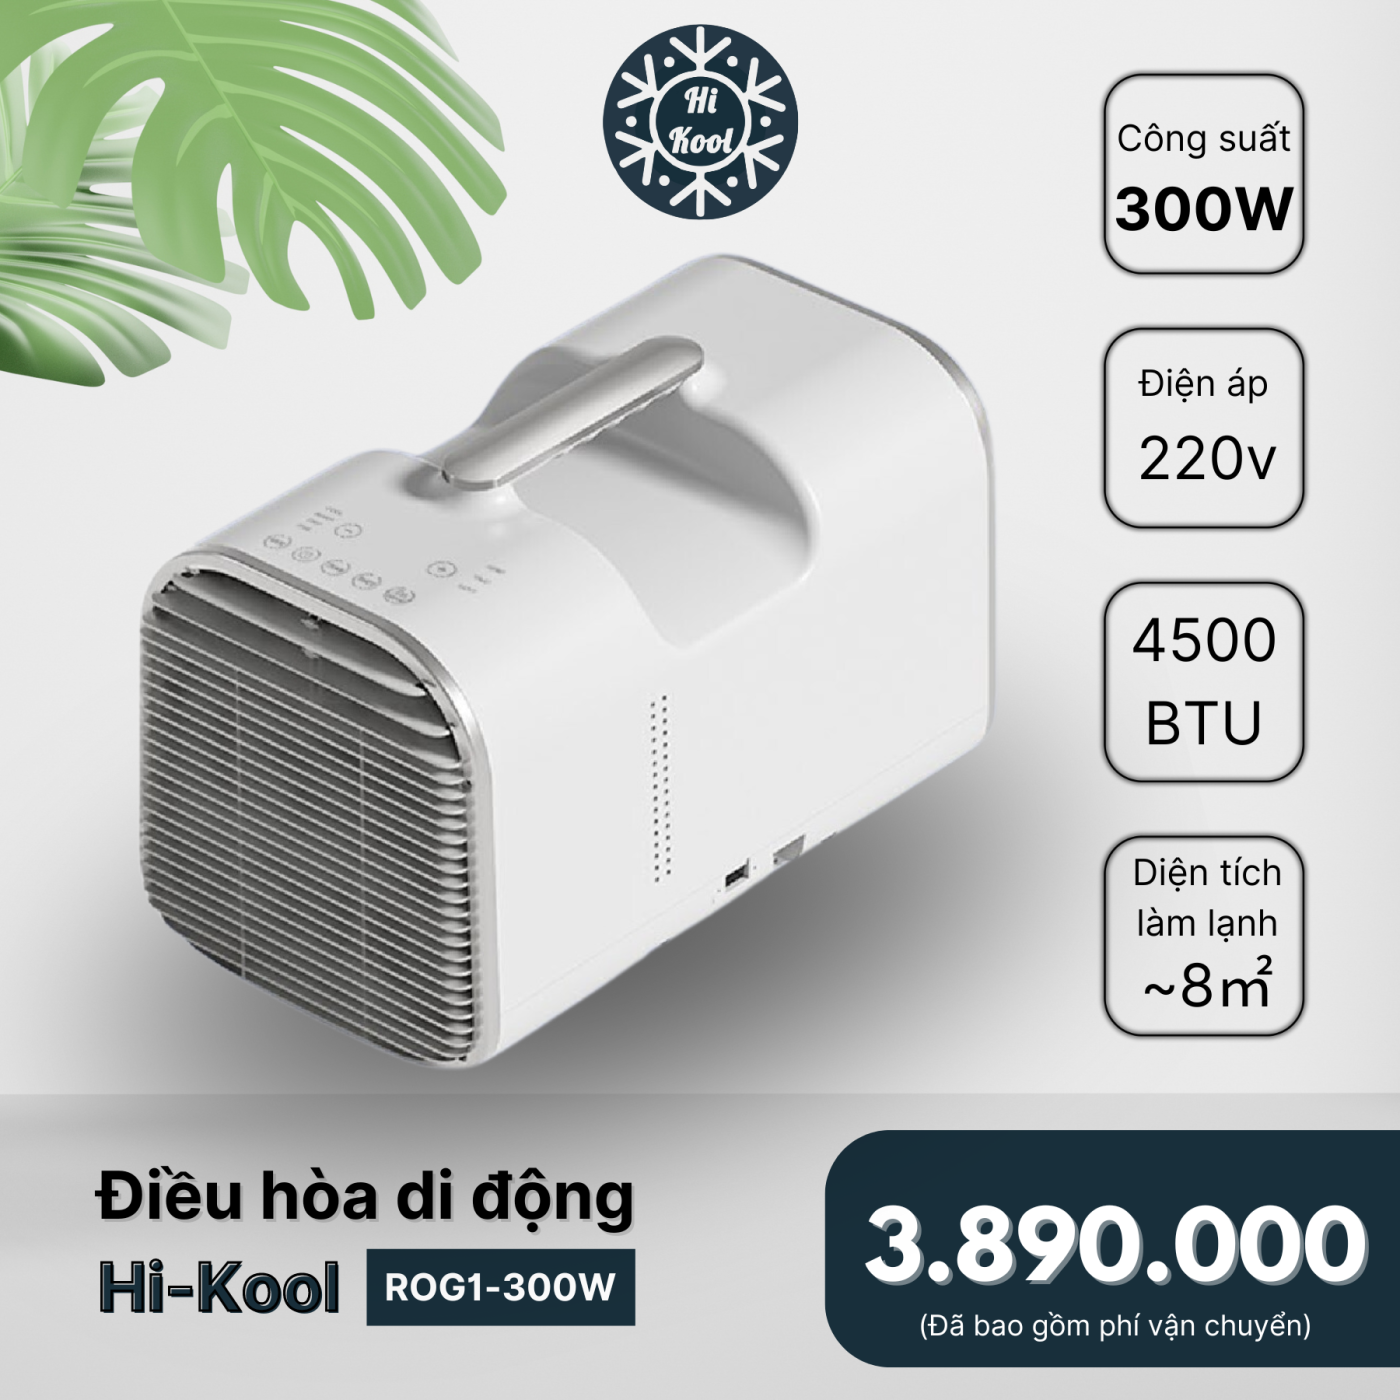 Điều hòa di động Hi-Kool - Công suất 300w - Siêu tiết kiệm điện - Chuyên cho camping cắm trại